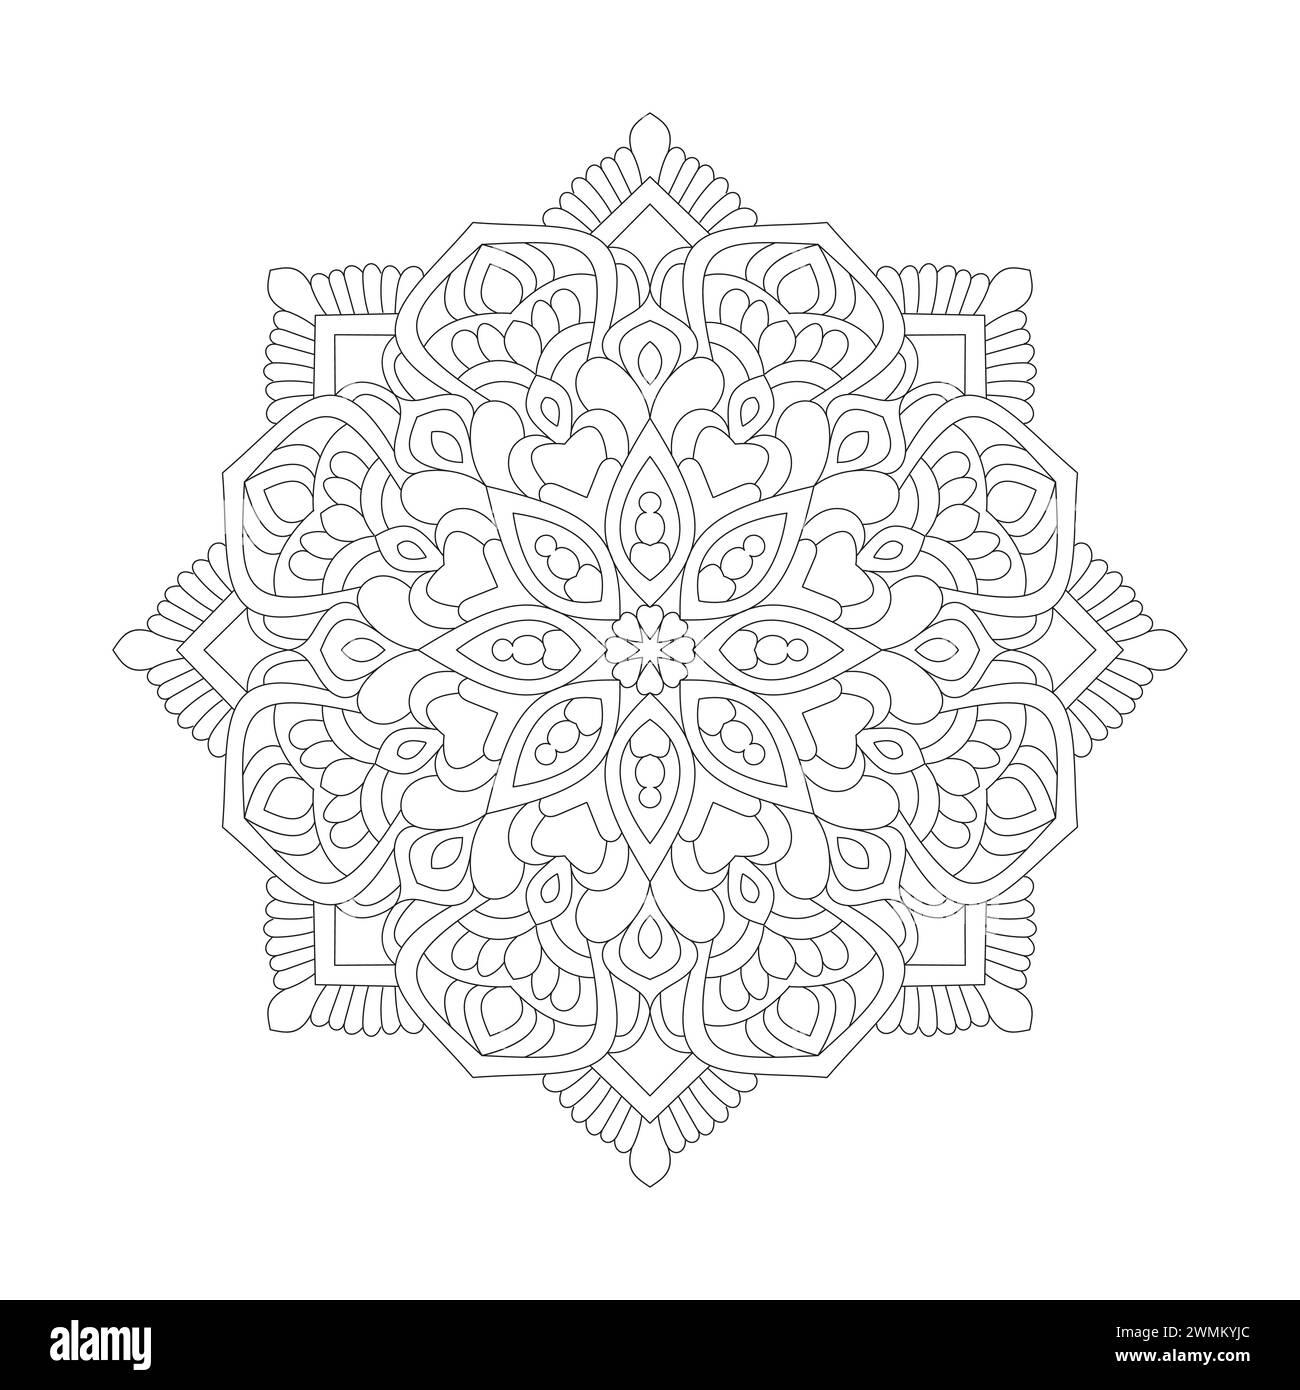 Einfachheit Affirmationen Mandala Malbuch Seite für KDP Book Interior. Friedliche Blütenblätter, Fähigkeit zum Entspannen, Gehirnerlebnisse, harmonische Oase, Stock Vektor